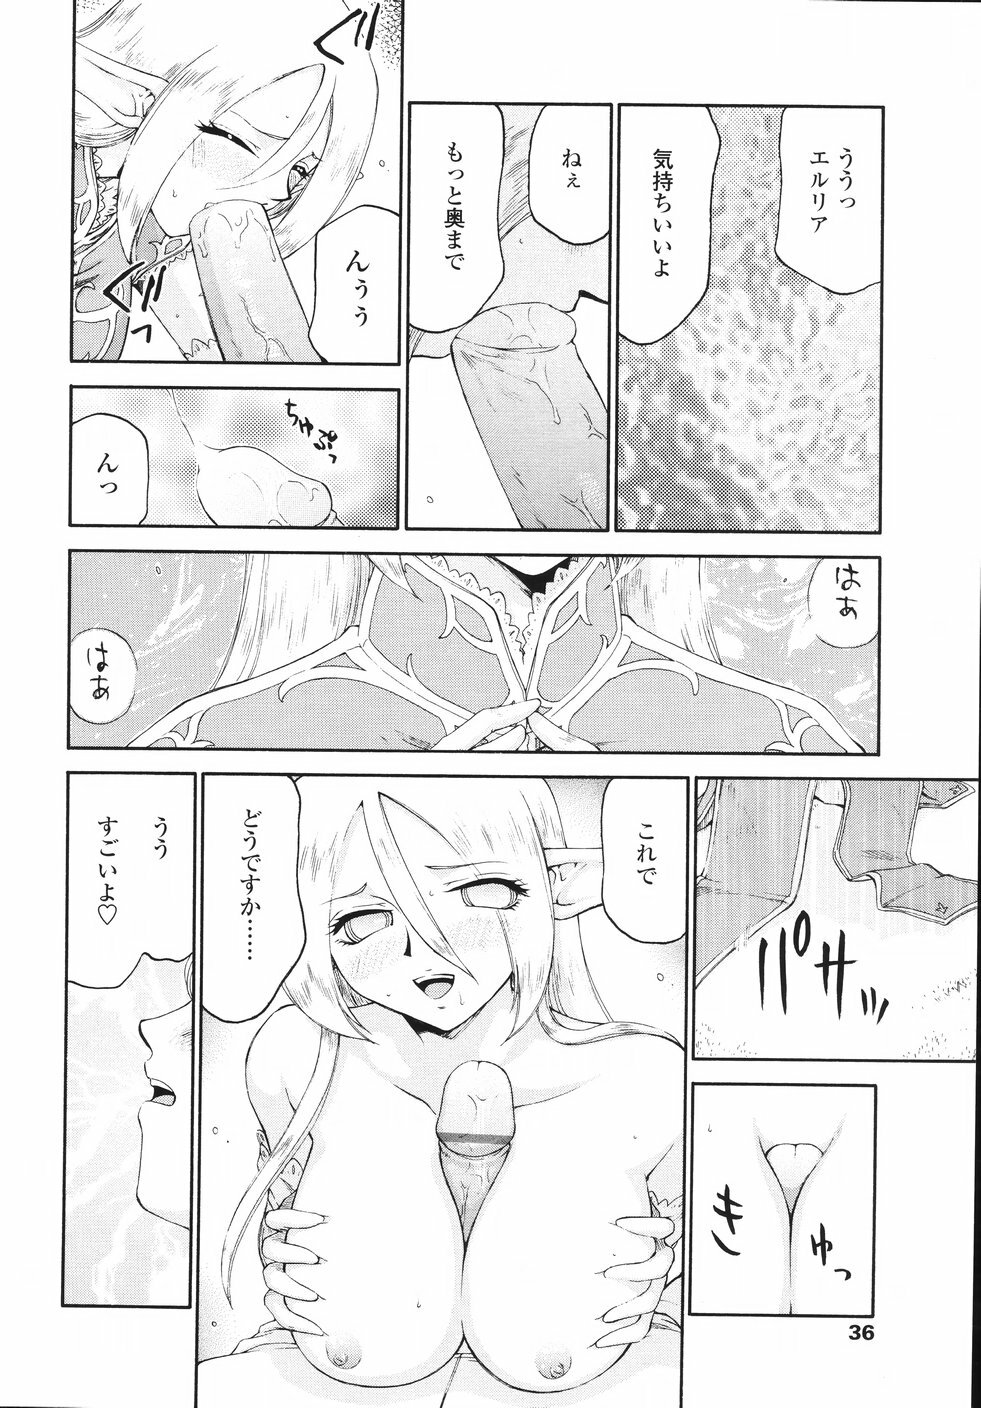 [Taira Hajime] Eruria page 39 full